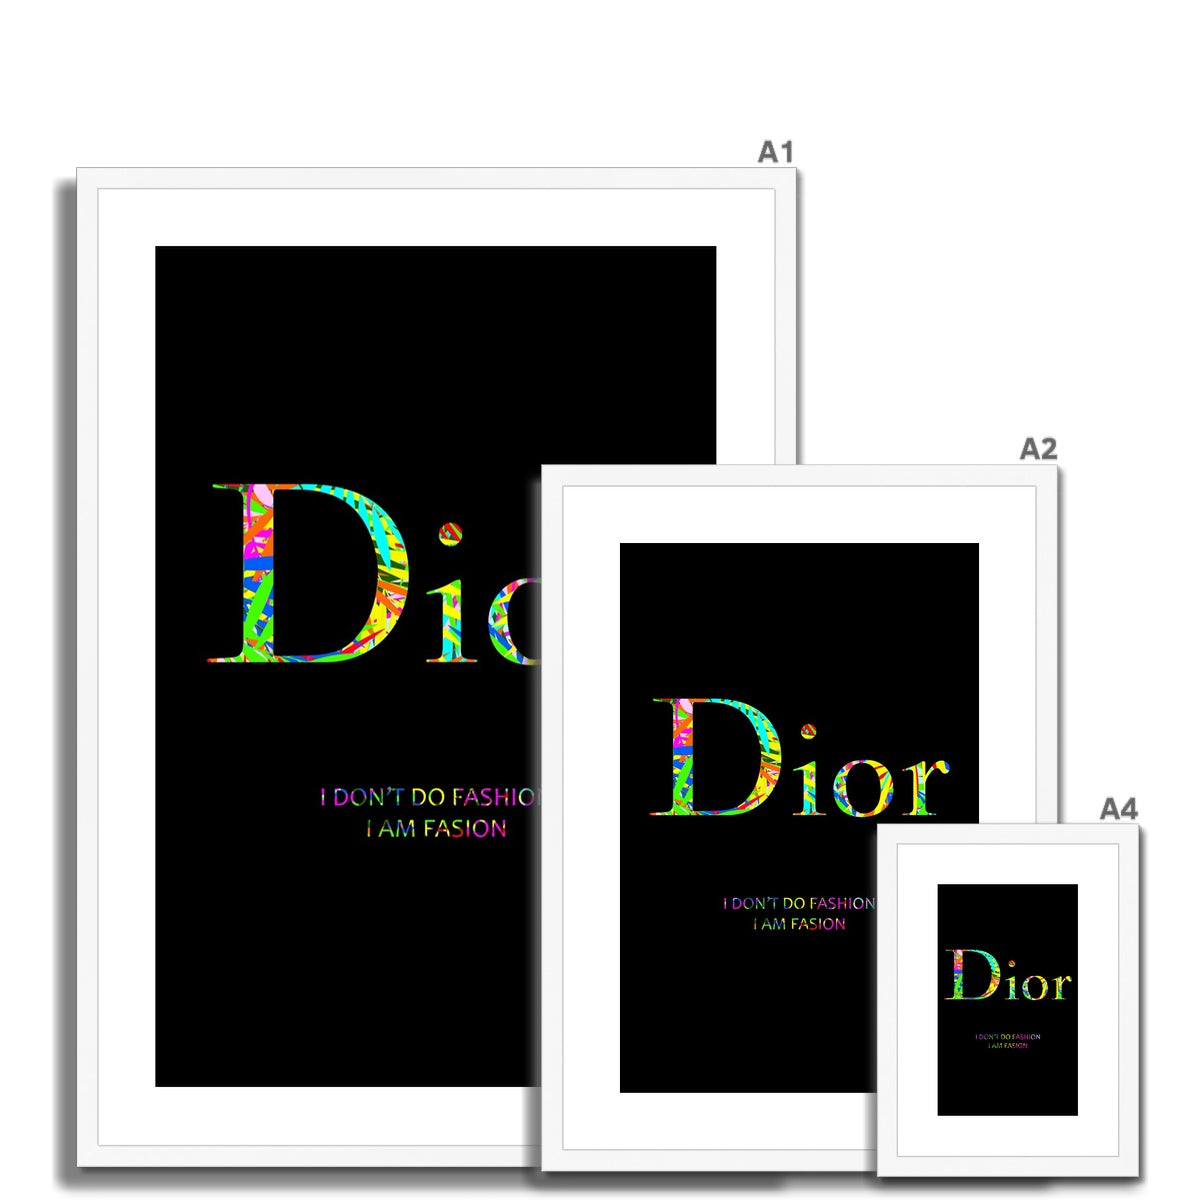 Dior - Framed Print